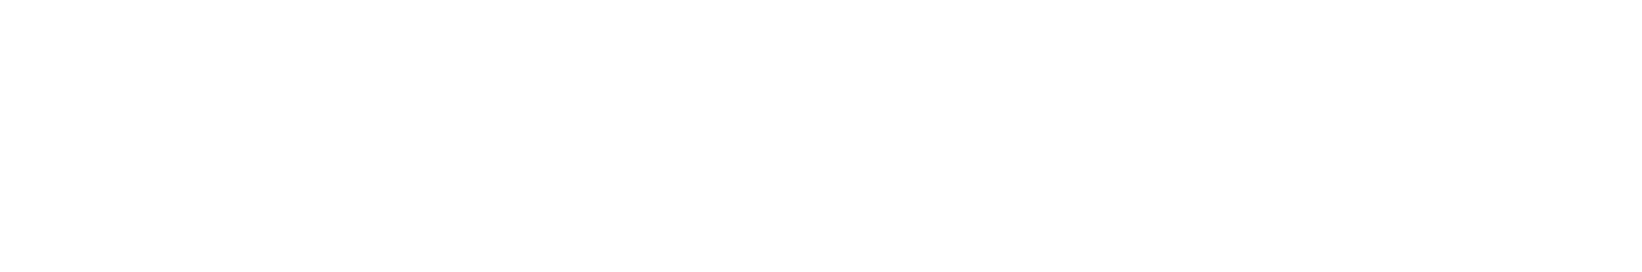 WH Smith logo grand pour les fonds sombres (PNG transparent)